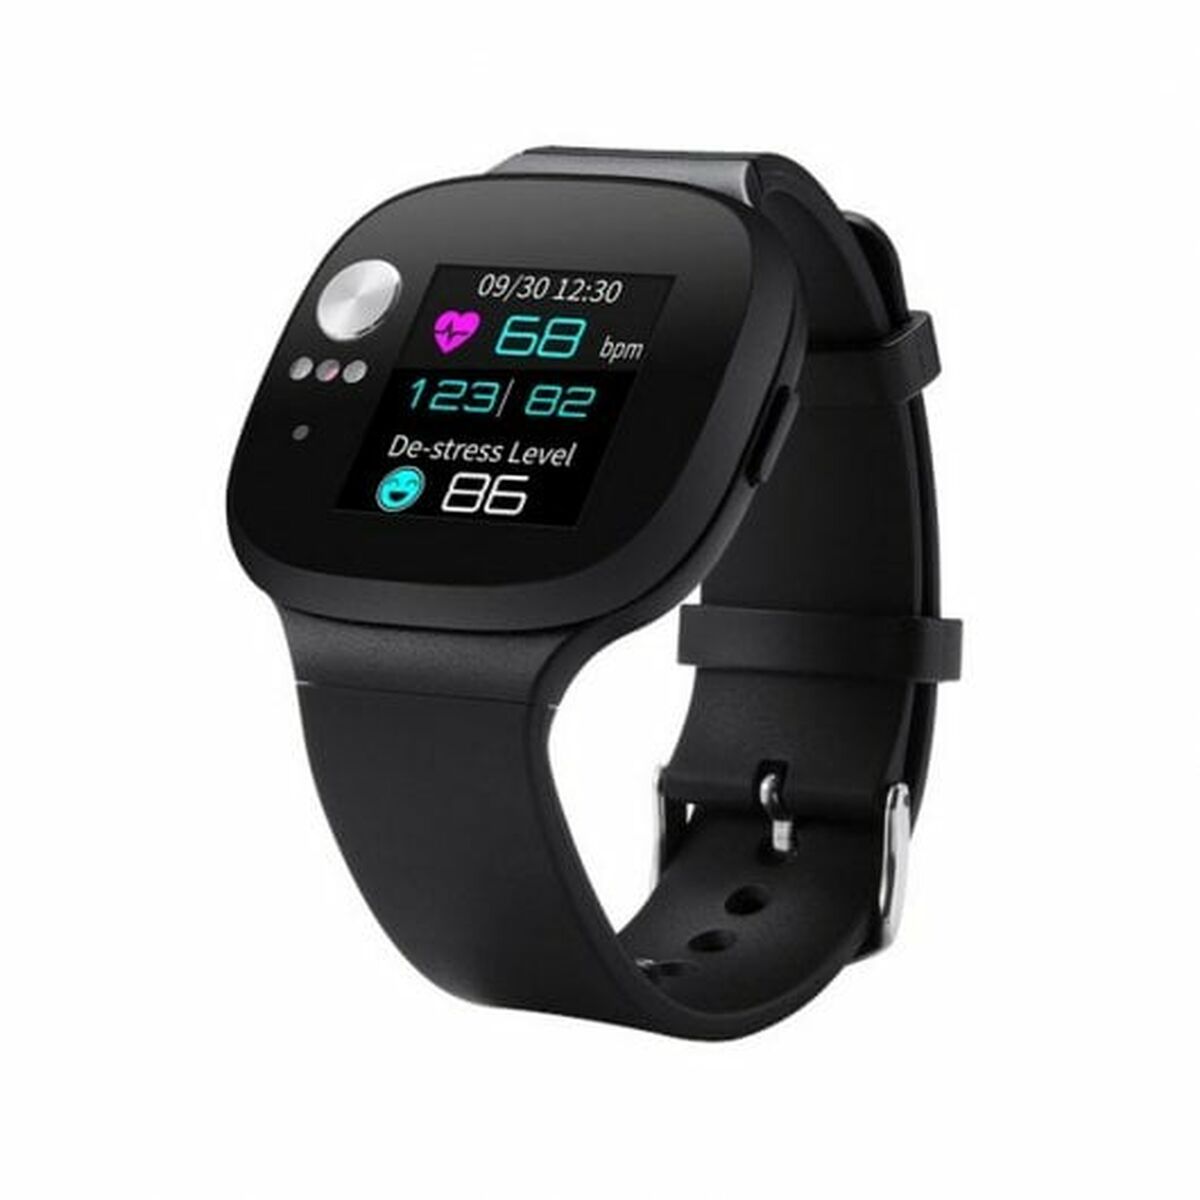 Smartwatch Asus VivoWatch BP Zwart